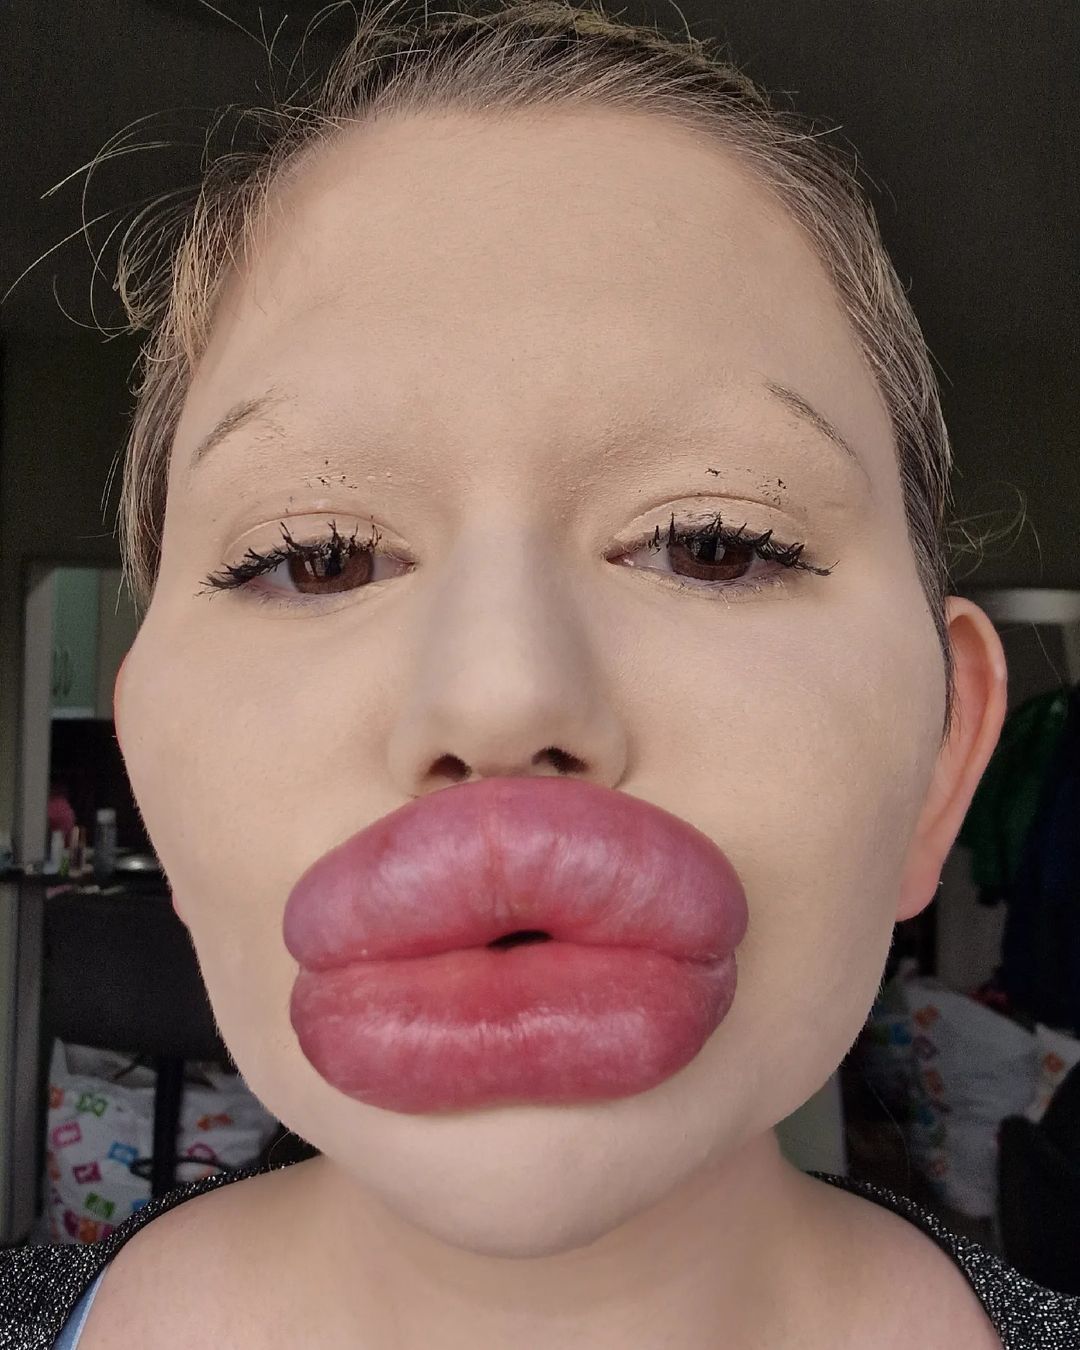 La mujer ha ganado gran reconocimiento gracias al aumento de labios que la han llevado a ganar el récord como la personas con los labios más grandes del mundo.